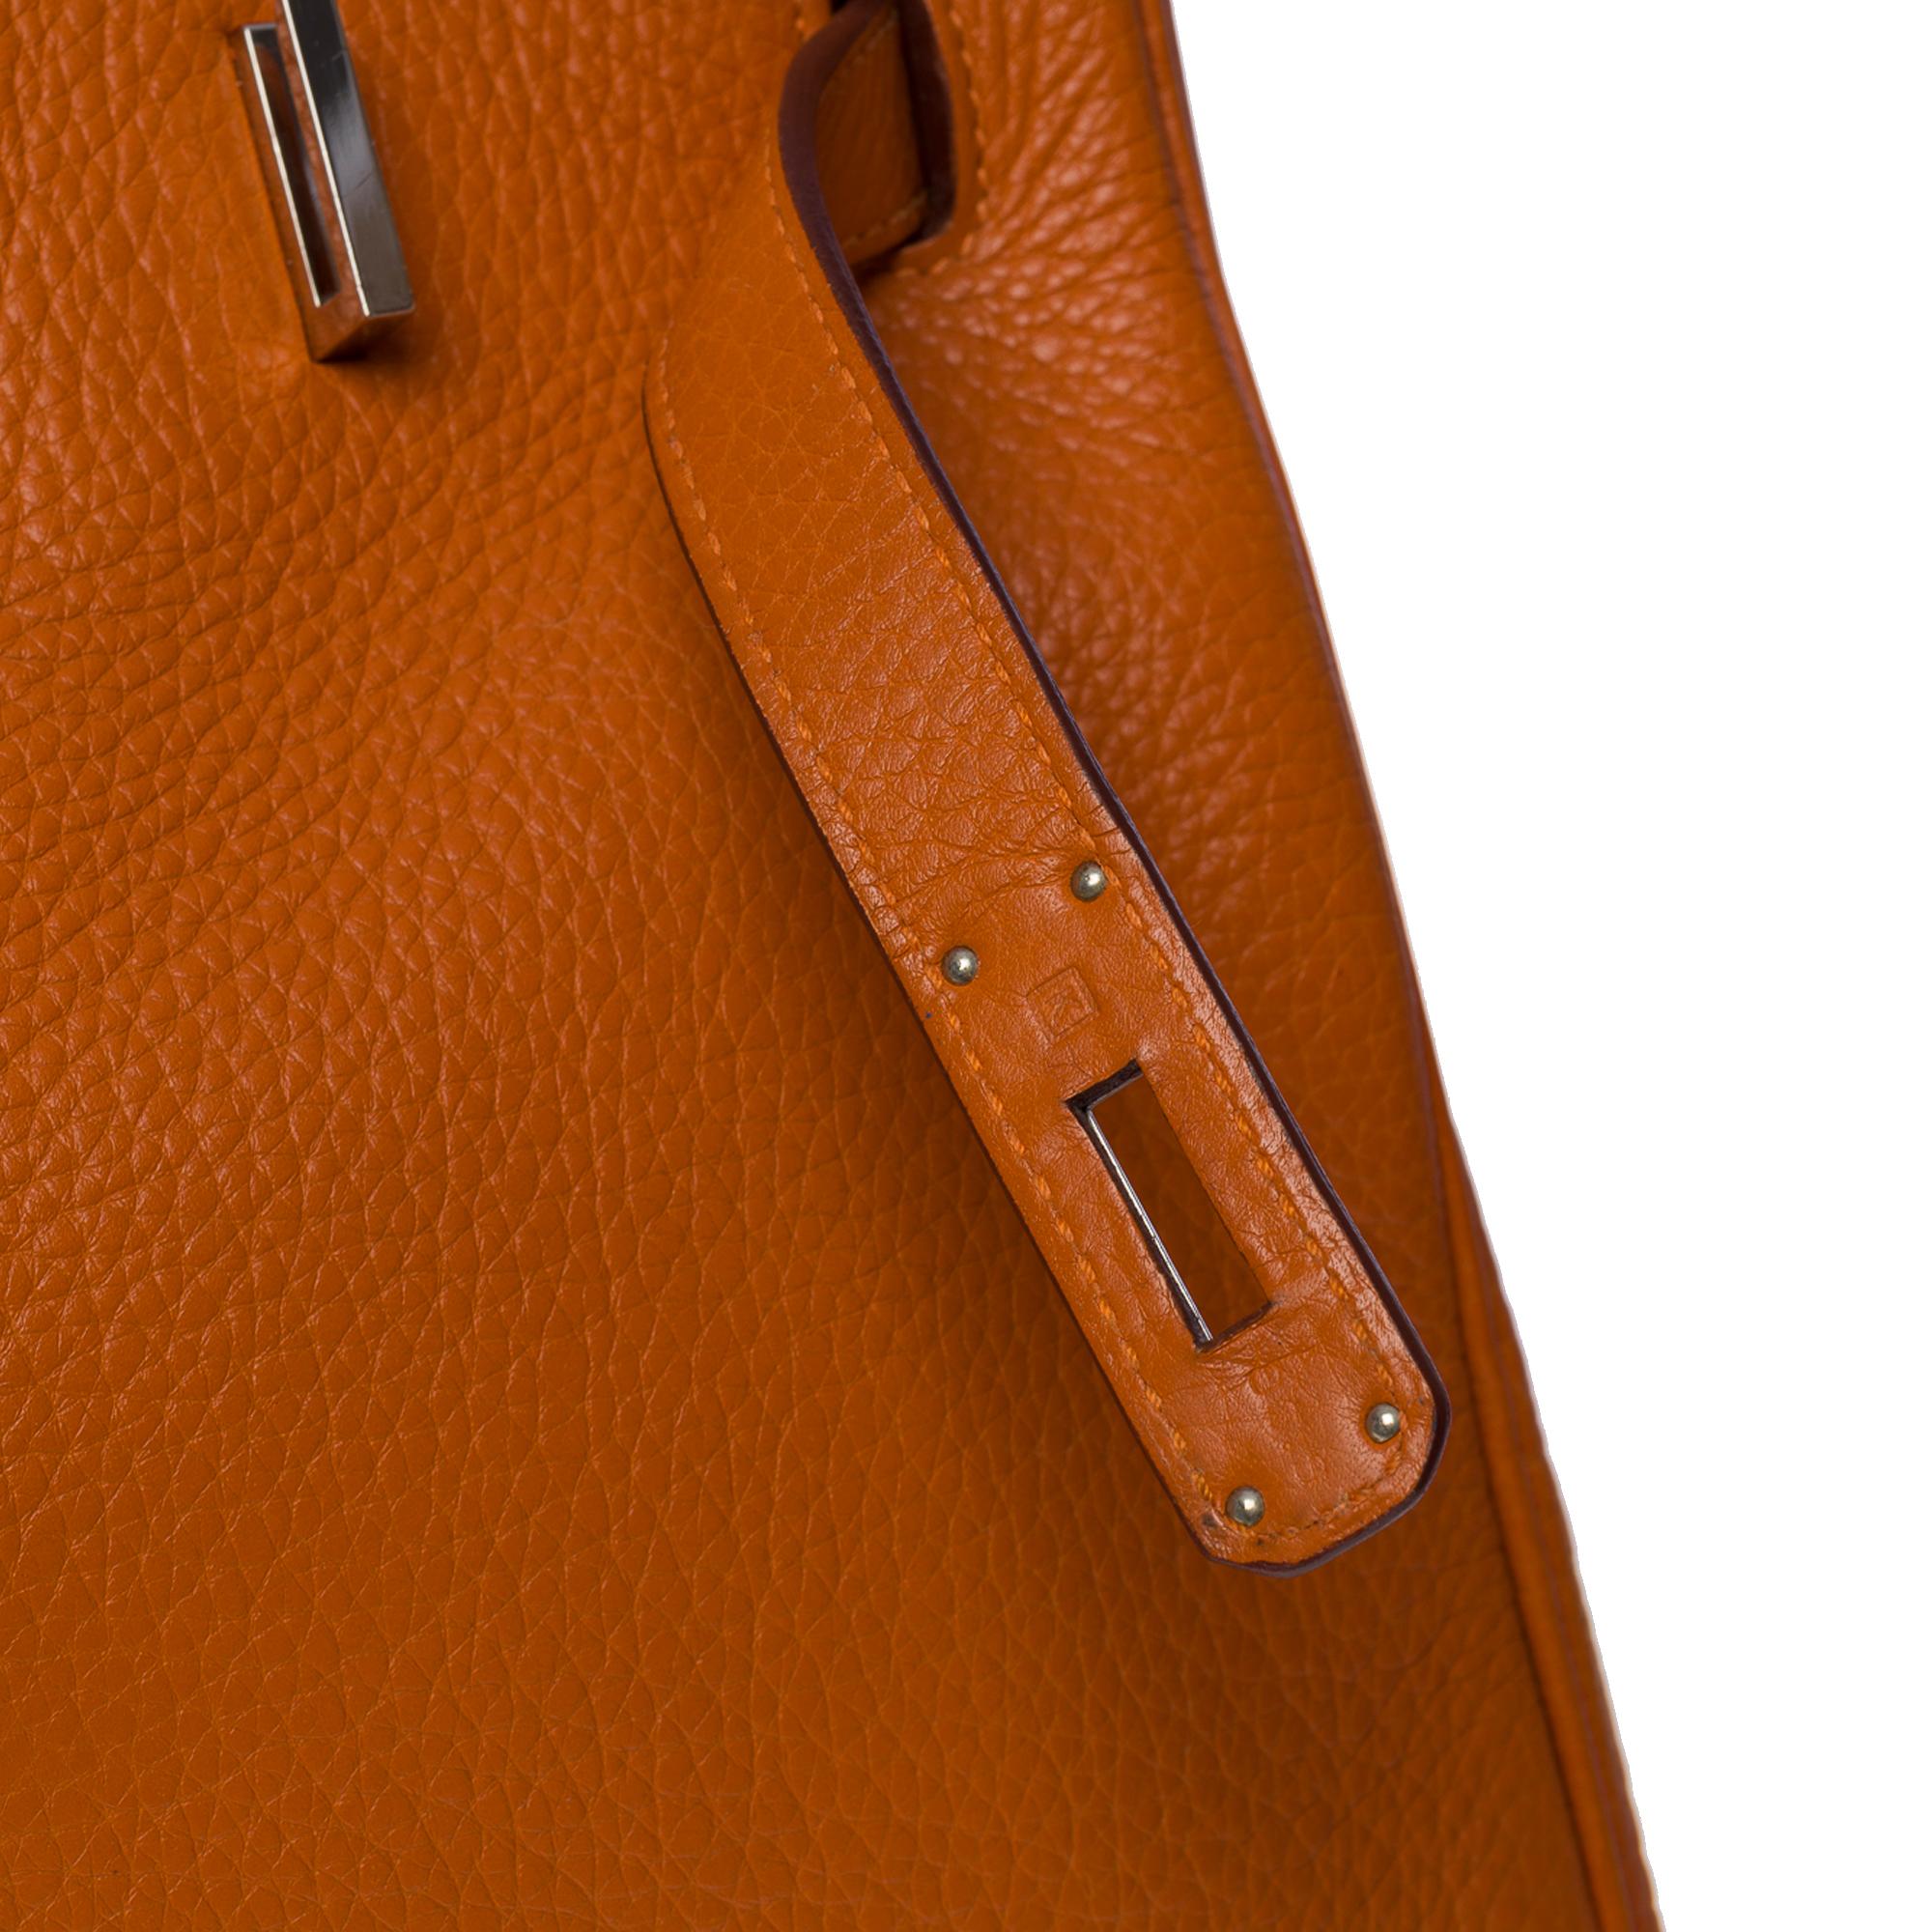 Stunning Hermès Birkin 35 handbag in Orange Togo leather, SHW 1